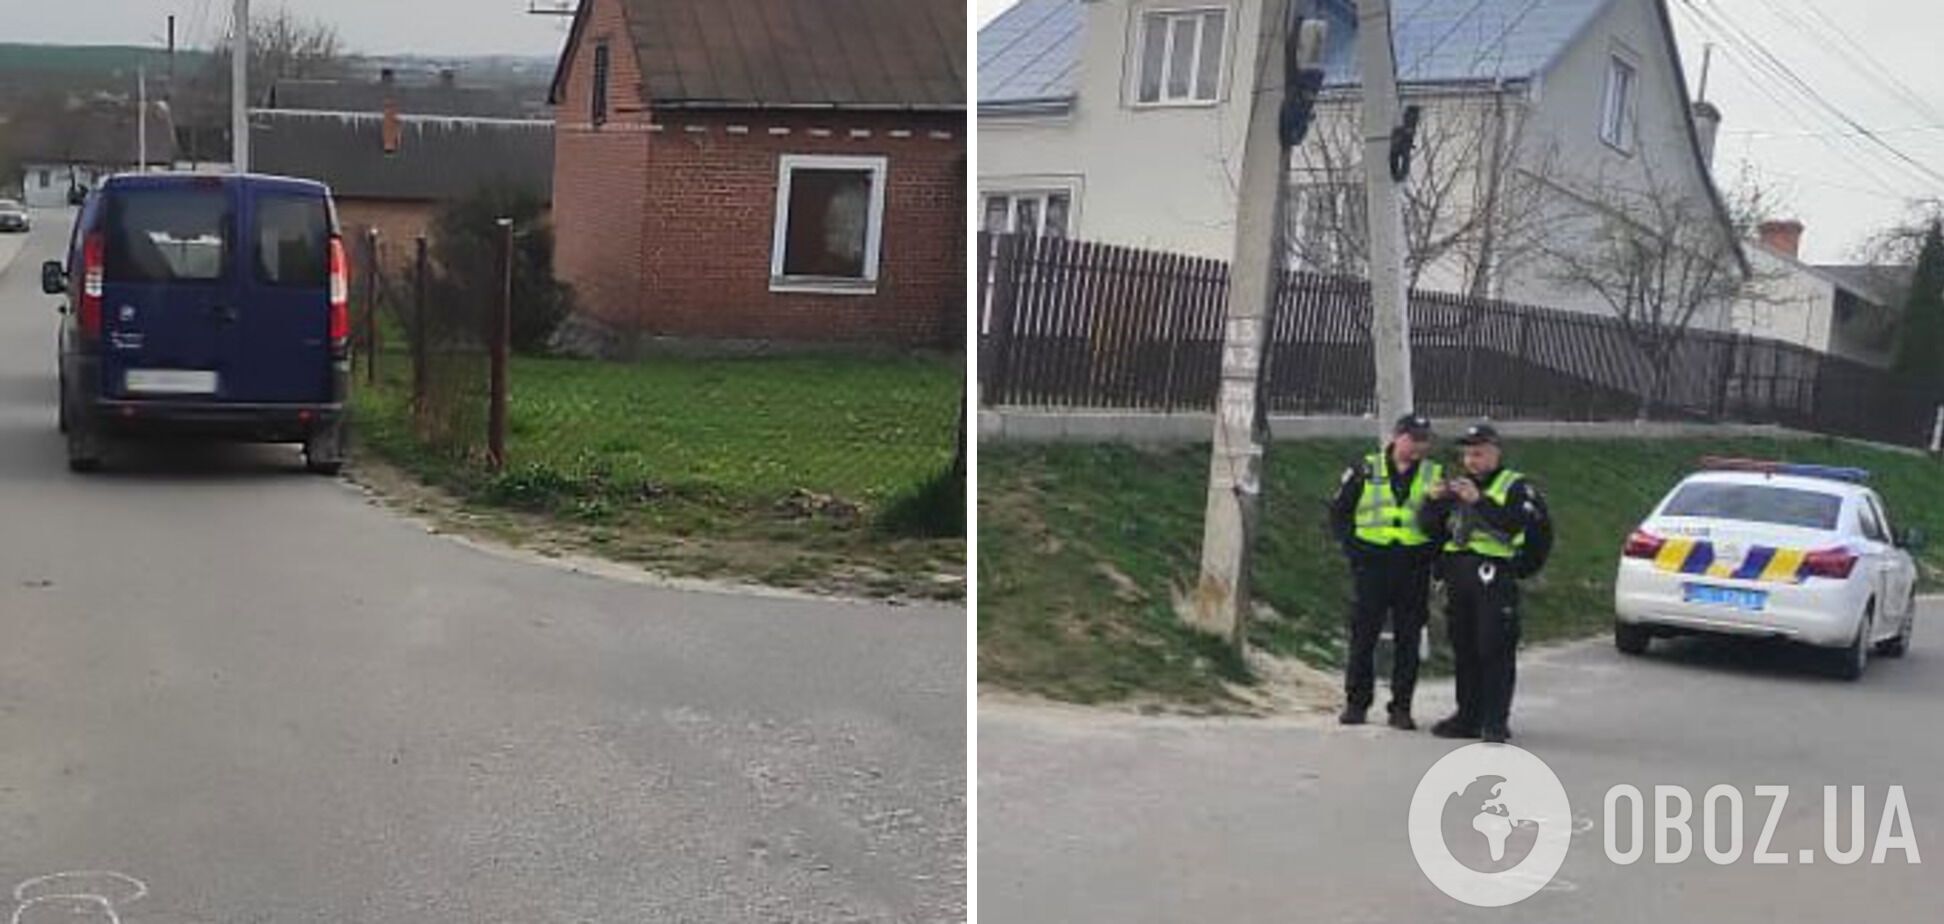 Во Львовской области авто сбило 8-летнего мальчика, который катался на самокате: появились подробности. Фото